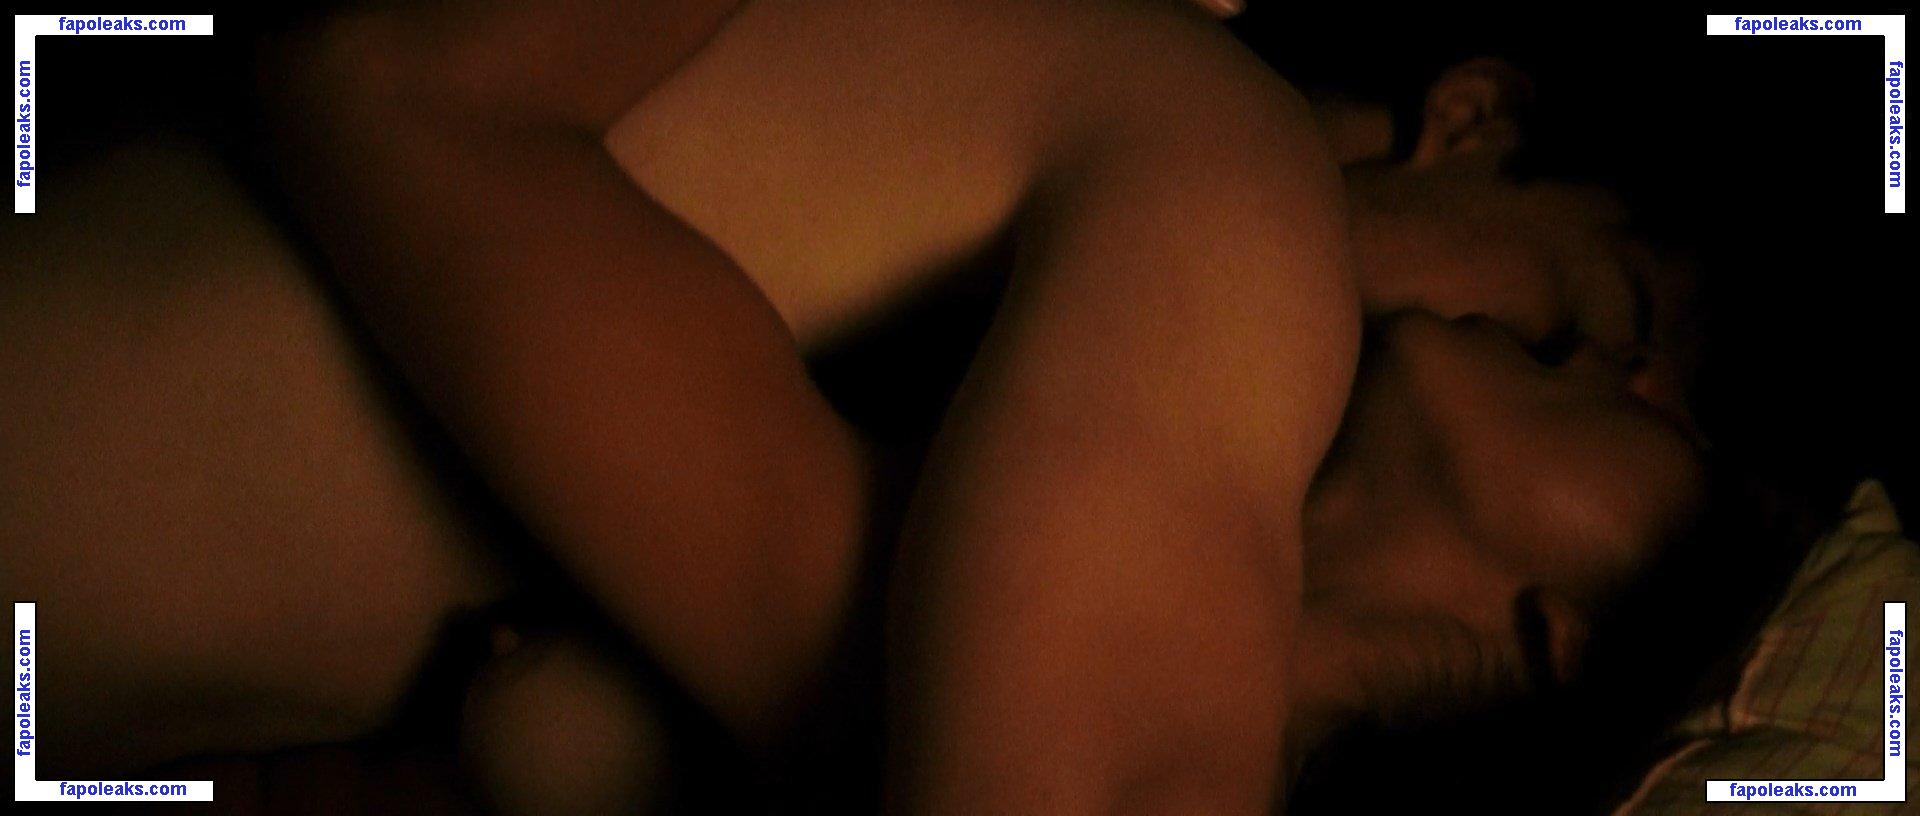 Alice Braga / alicebraga nude photo #0137 from OnlyFans